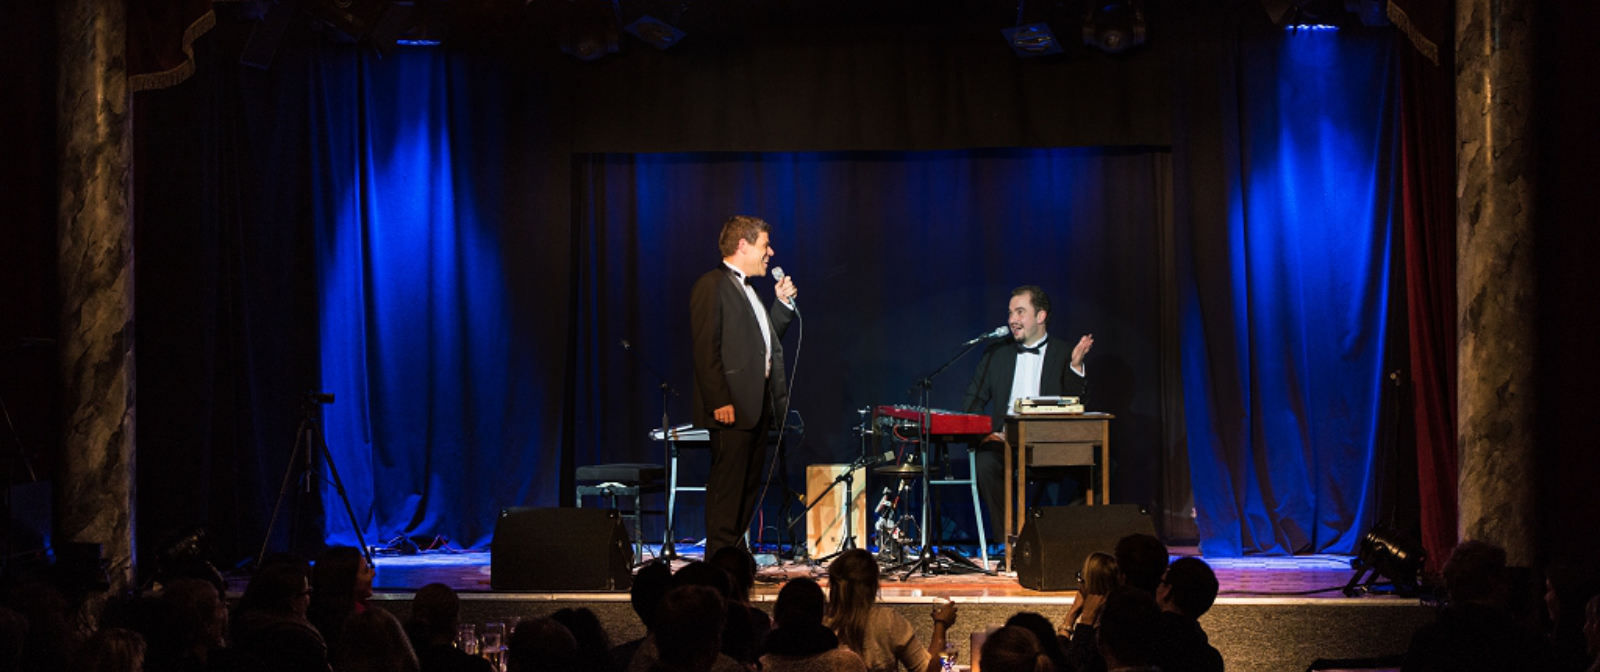 Zwei Männer im Anzug auf einer blau ausgeleuchteten Bühne. Links im Bild steht der Mann mit einem Mikrofon in der Hand, der andere sitzt rechts im Bild an einem Klavier.